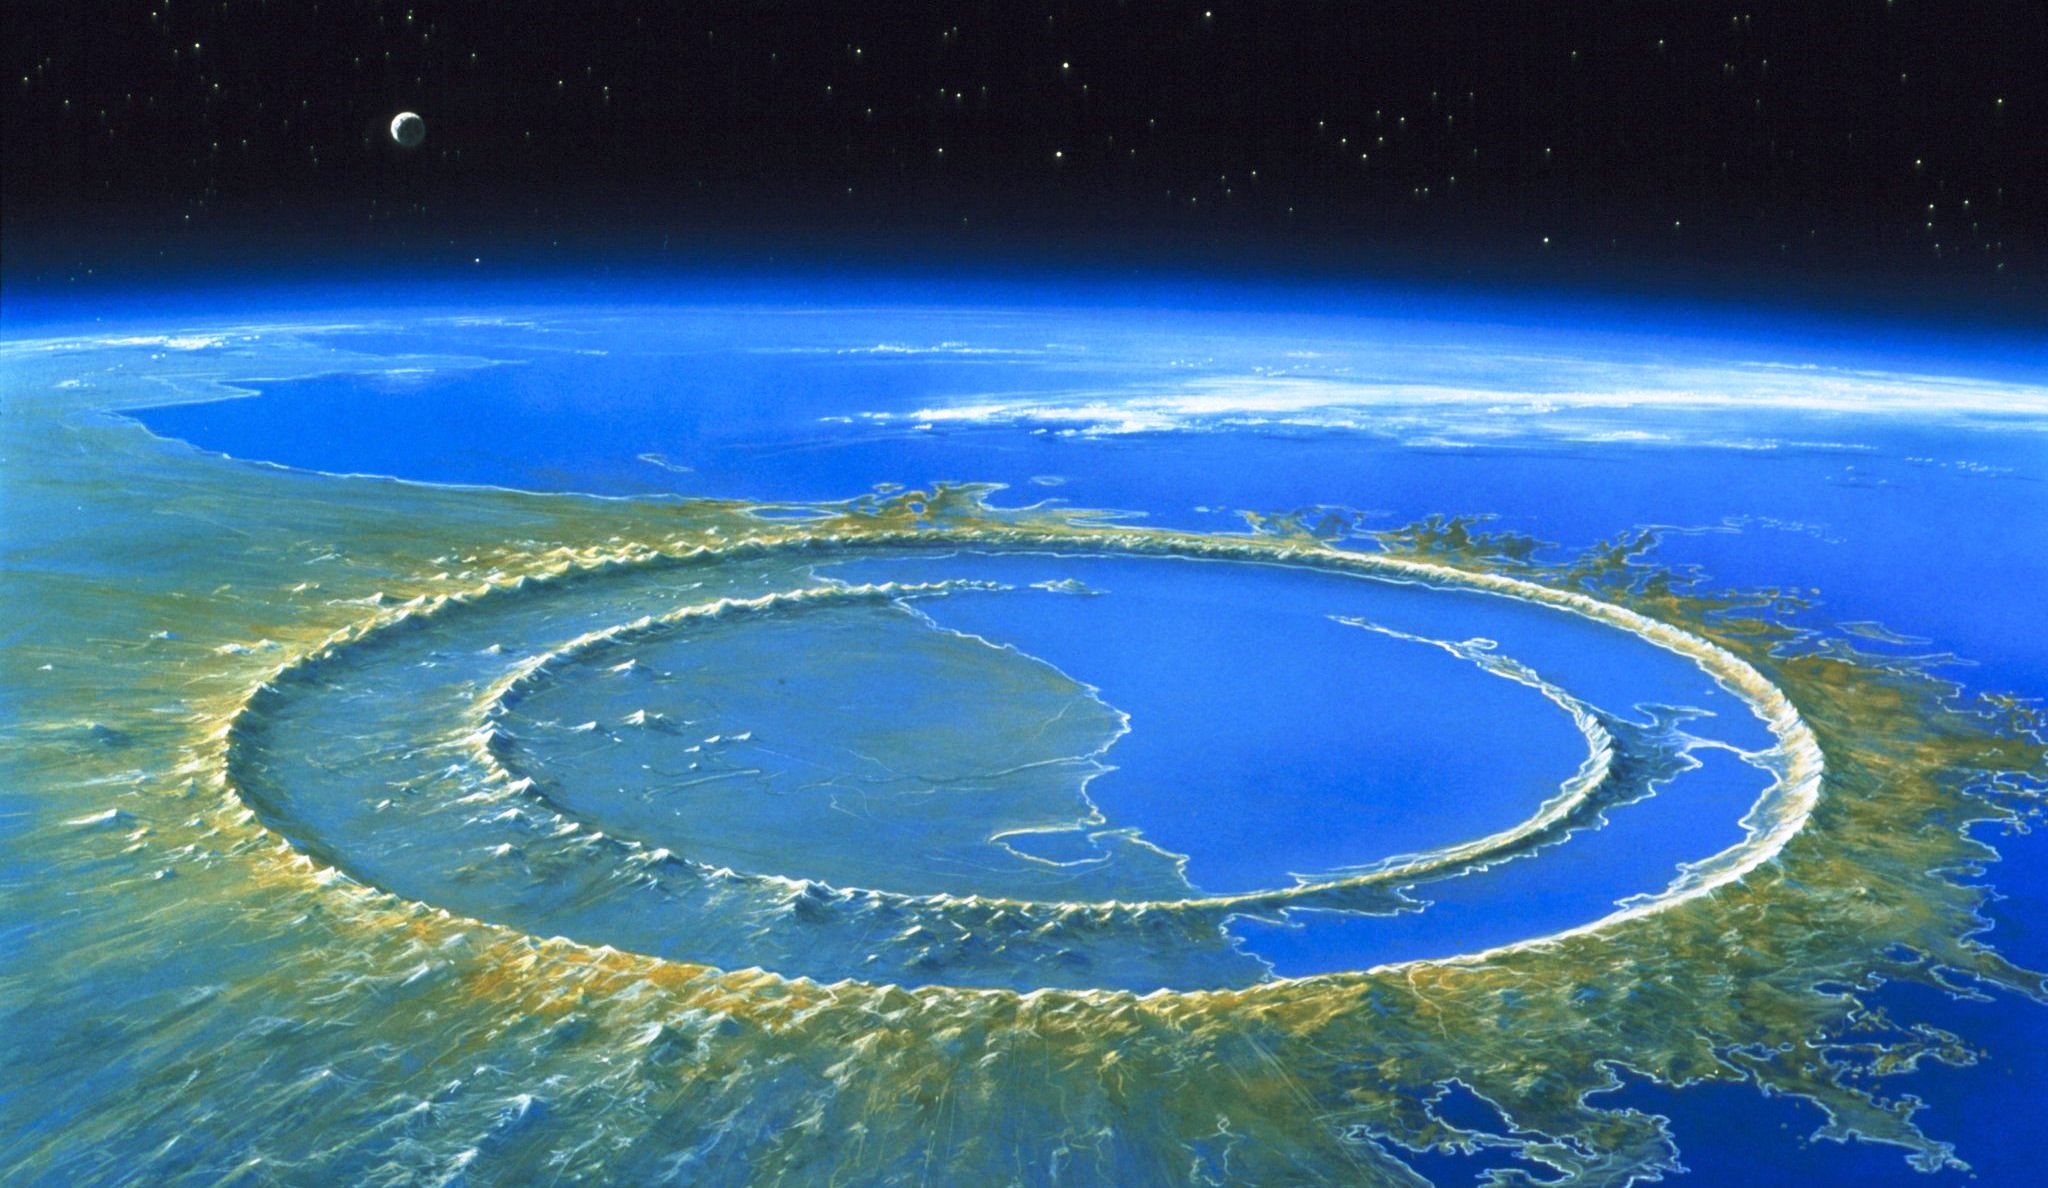 Une vue d'artiste du cratère d'impact de Chicxulub quelques milliers d'années après sa formation. © Detlev_van_Ravenswaay, Science